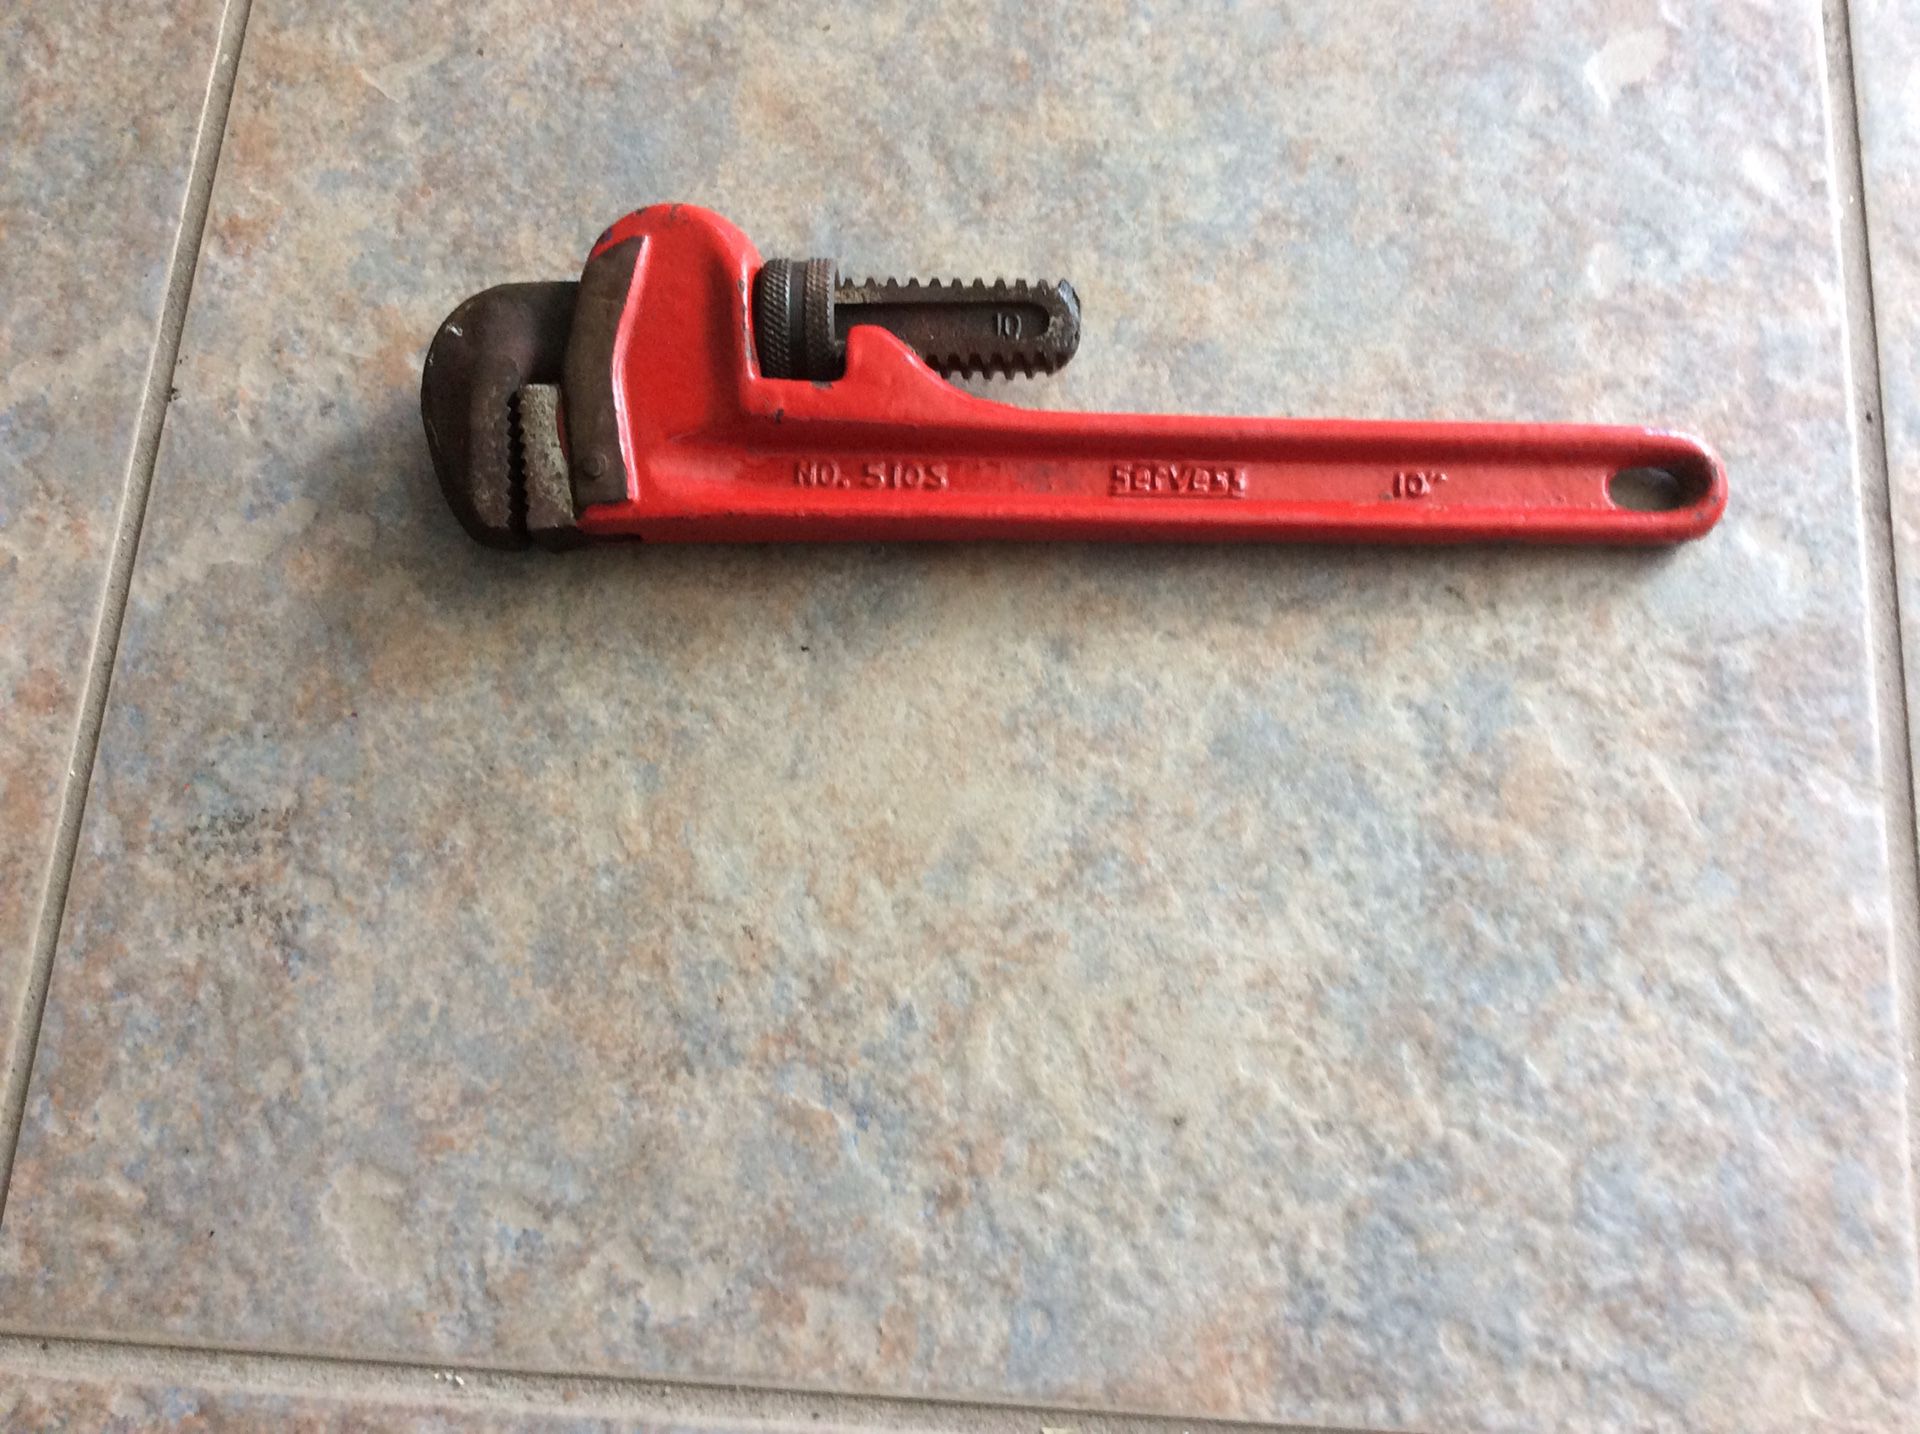 Pipe wrench, 10 in heavy duty